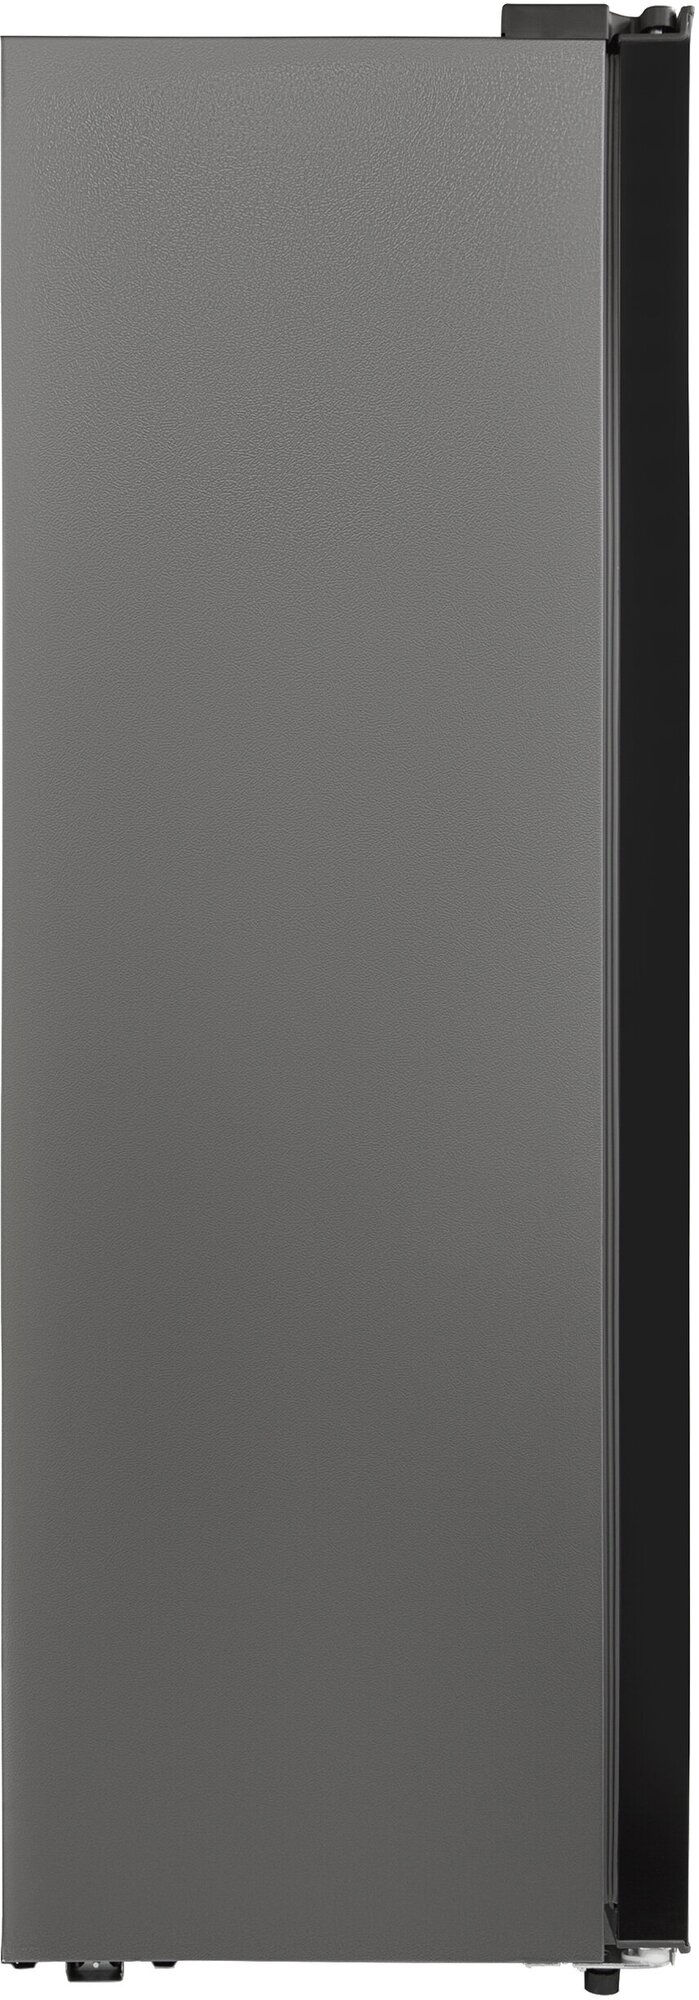 Холодильник SLU S400H4EN, side by side, Full No Frost, нержавеющая сталь - фотография № 16